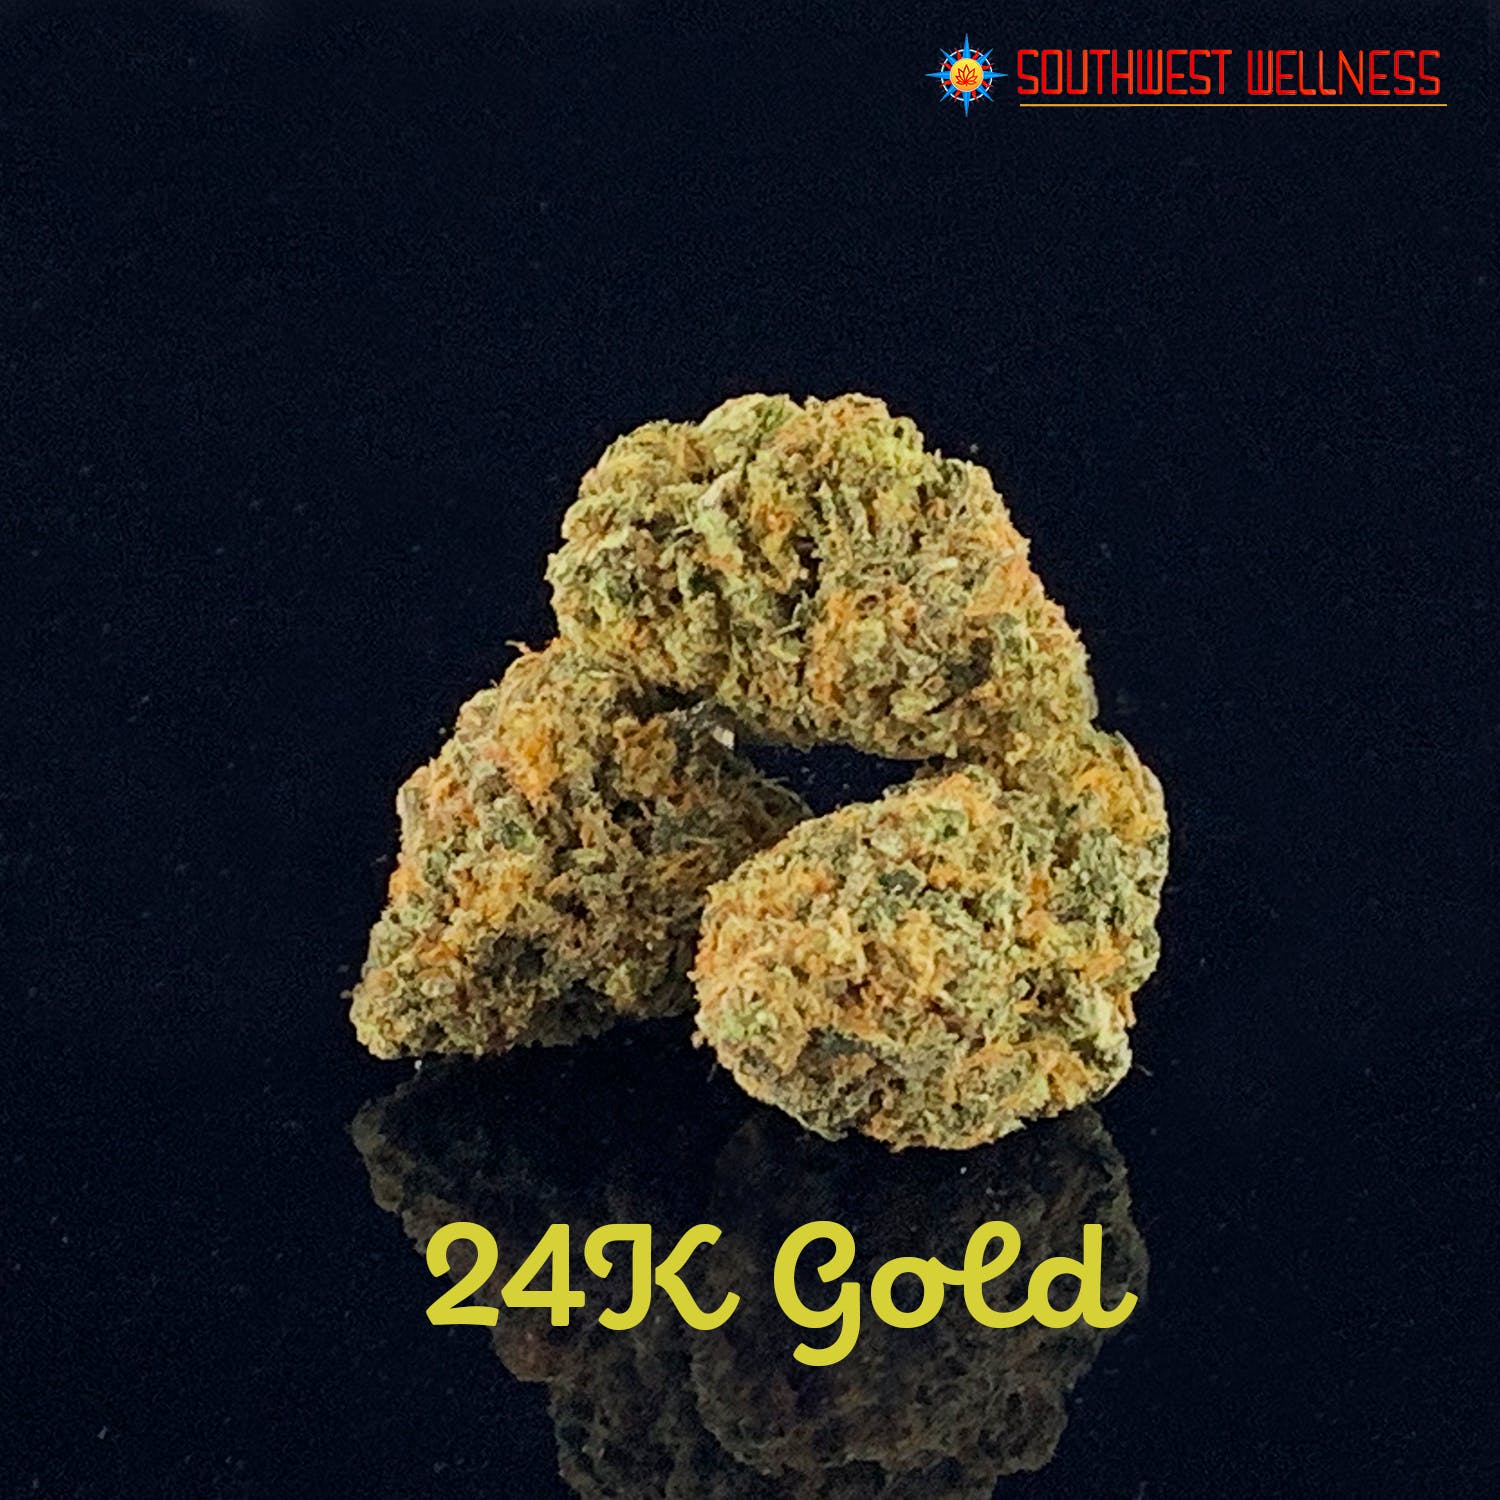 24K Gold - 20.3% THC